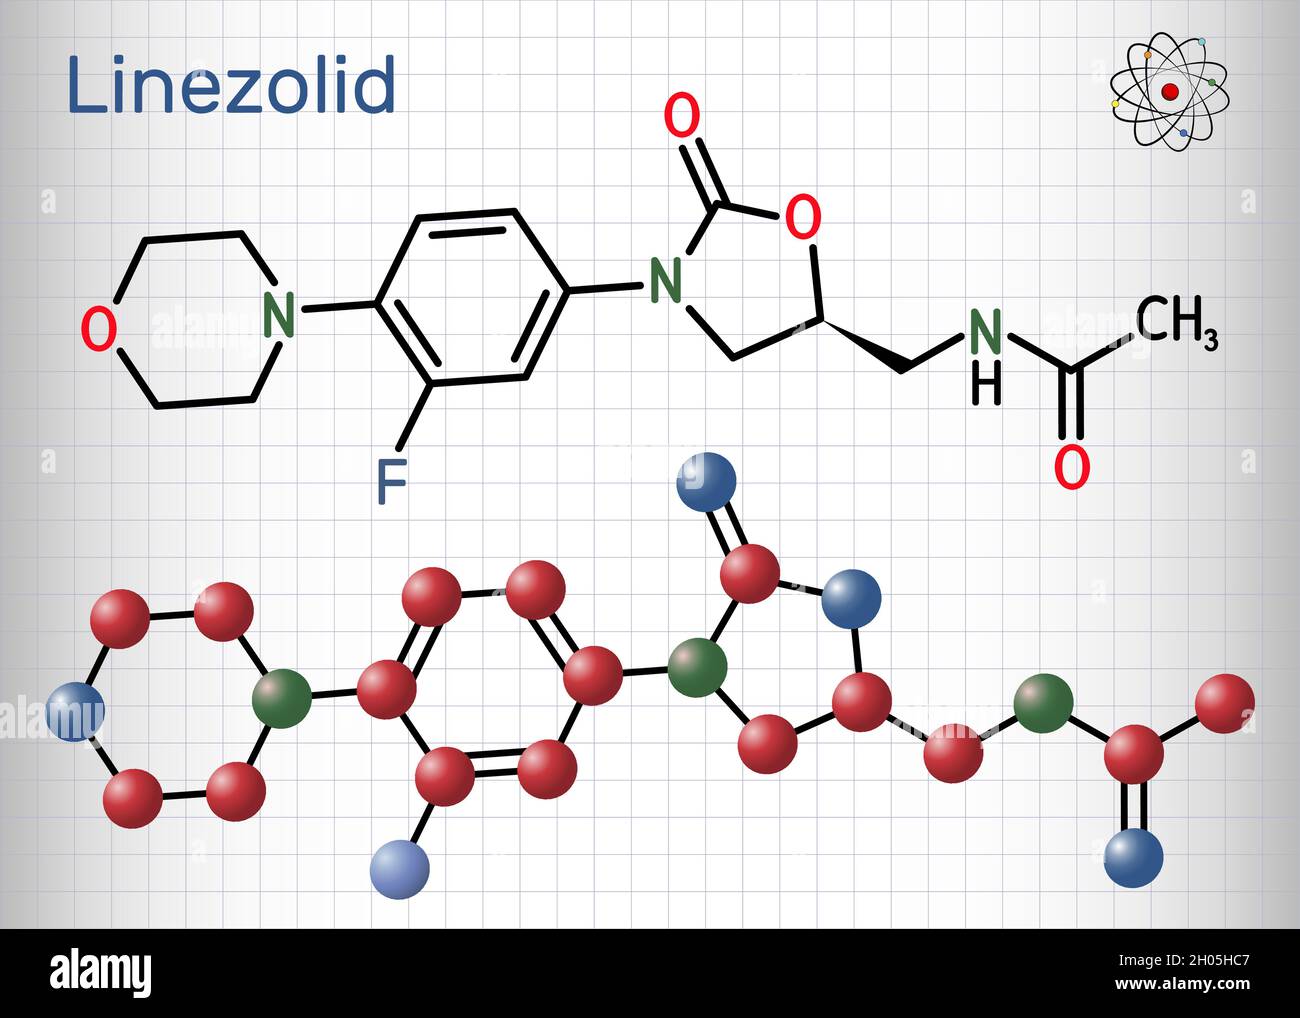 Linezolid-Molekül. Es ist ein synthetisches Antibiotikum, das zur Behandlung von Infektionen wie Streptokokken, Staphylococcus aureus und MRSA verwendet wird. Blatt Papier i Stock Vektor